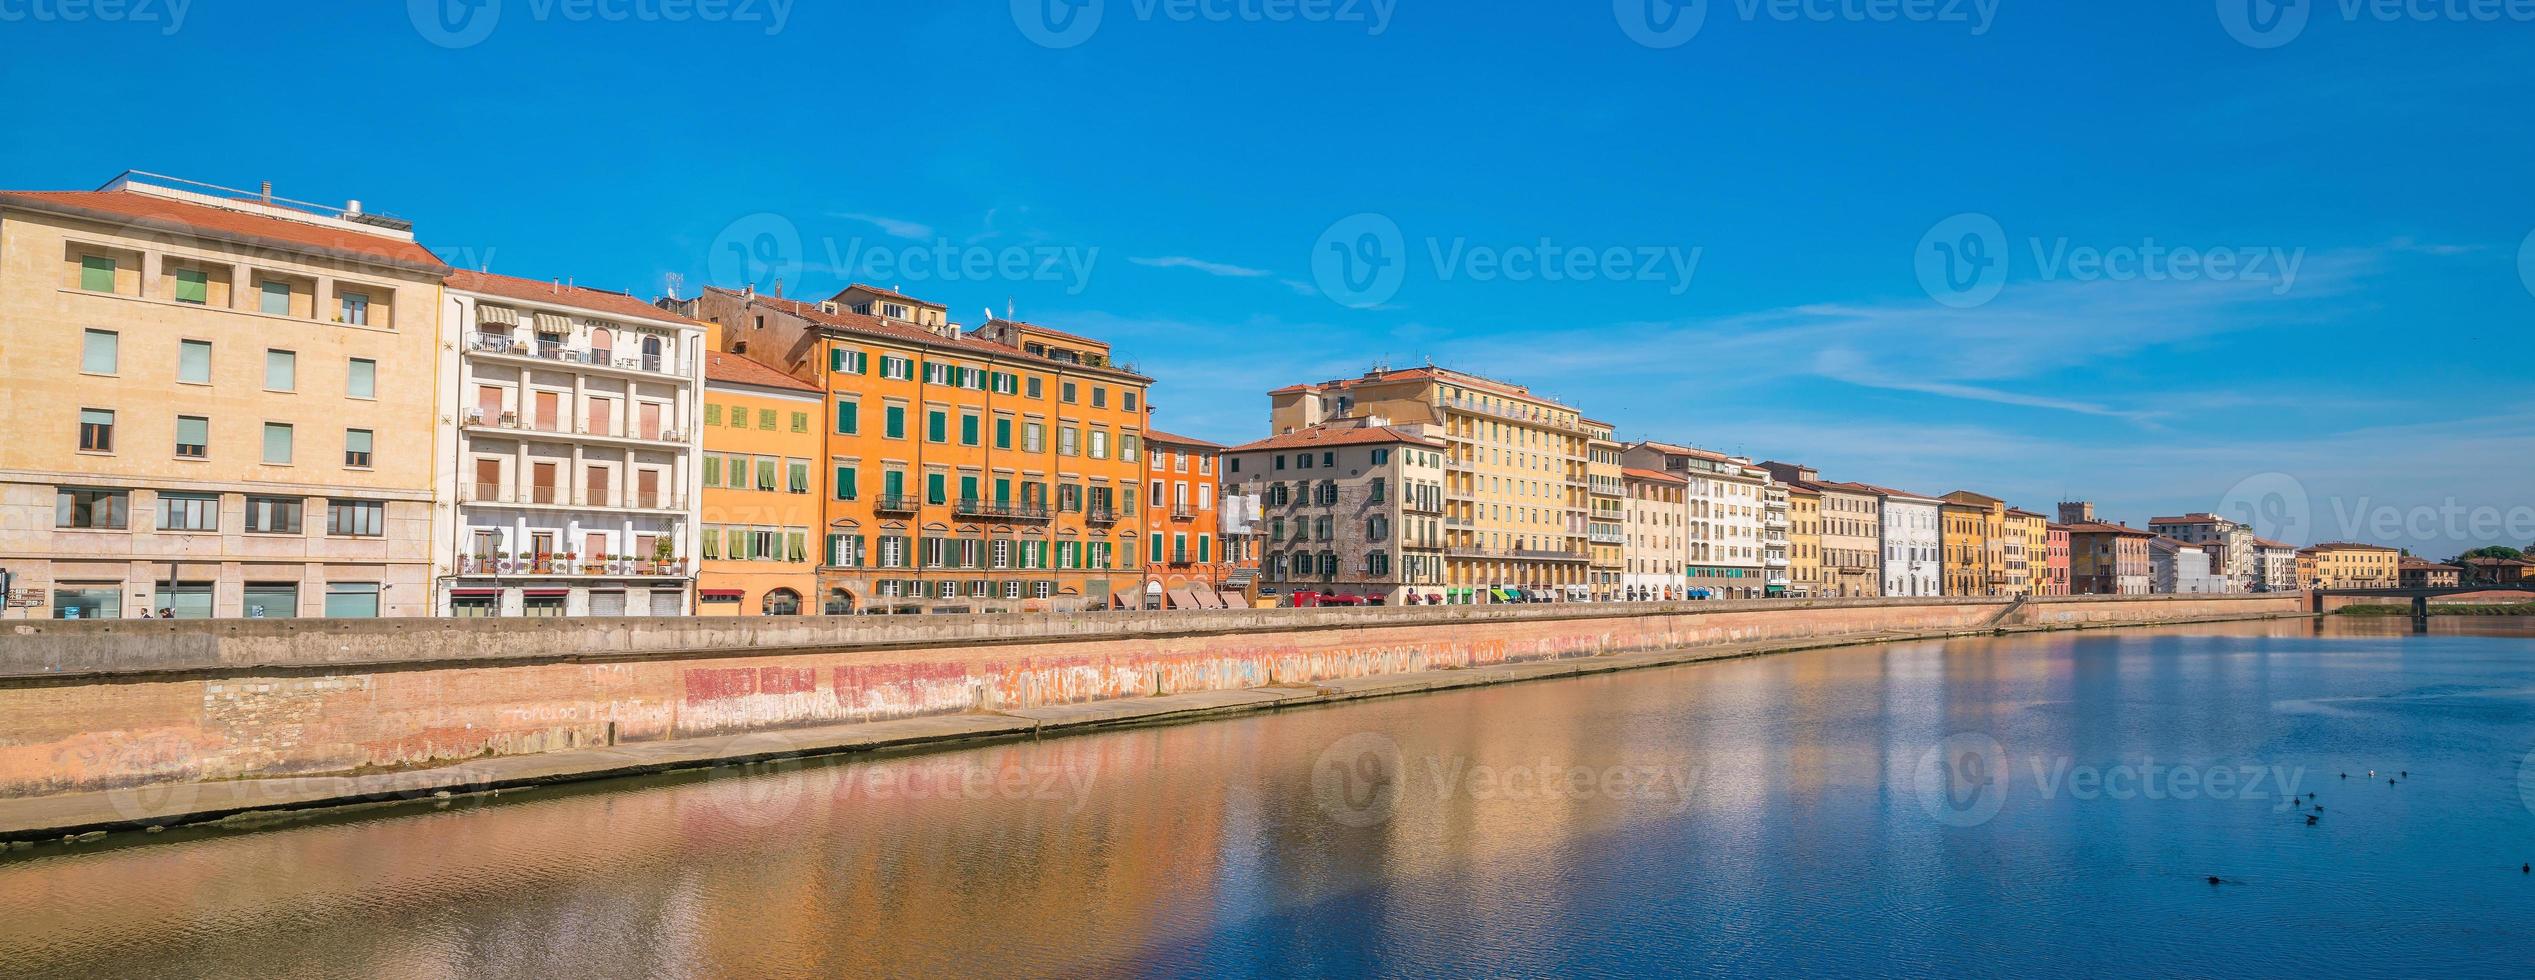 Pisa stadssilhuett och Arno-floden foto